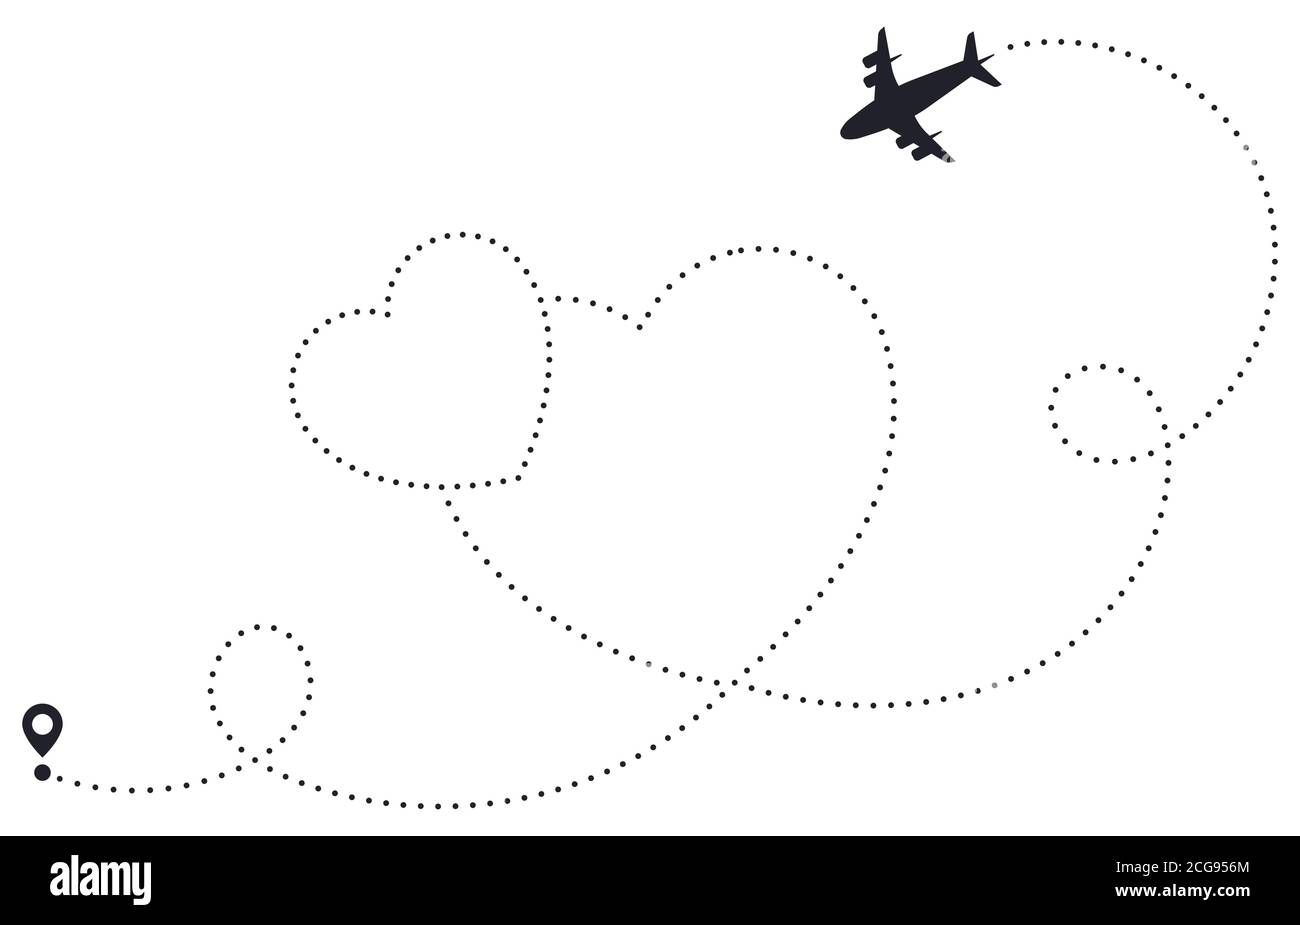 Me encanta la ruta del avión. Ruta con puntos en el corazón, mapa de destino de la aerolínea, línea de rutas de avión romántico, ruta de viaje de corazón ilustración vectorial Ilustración del Vector